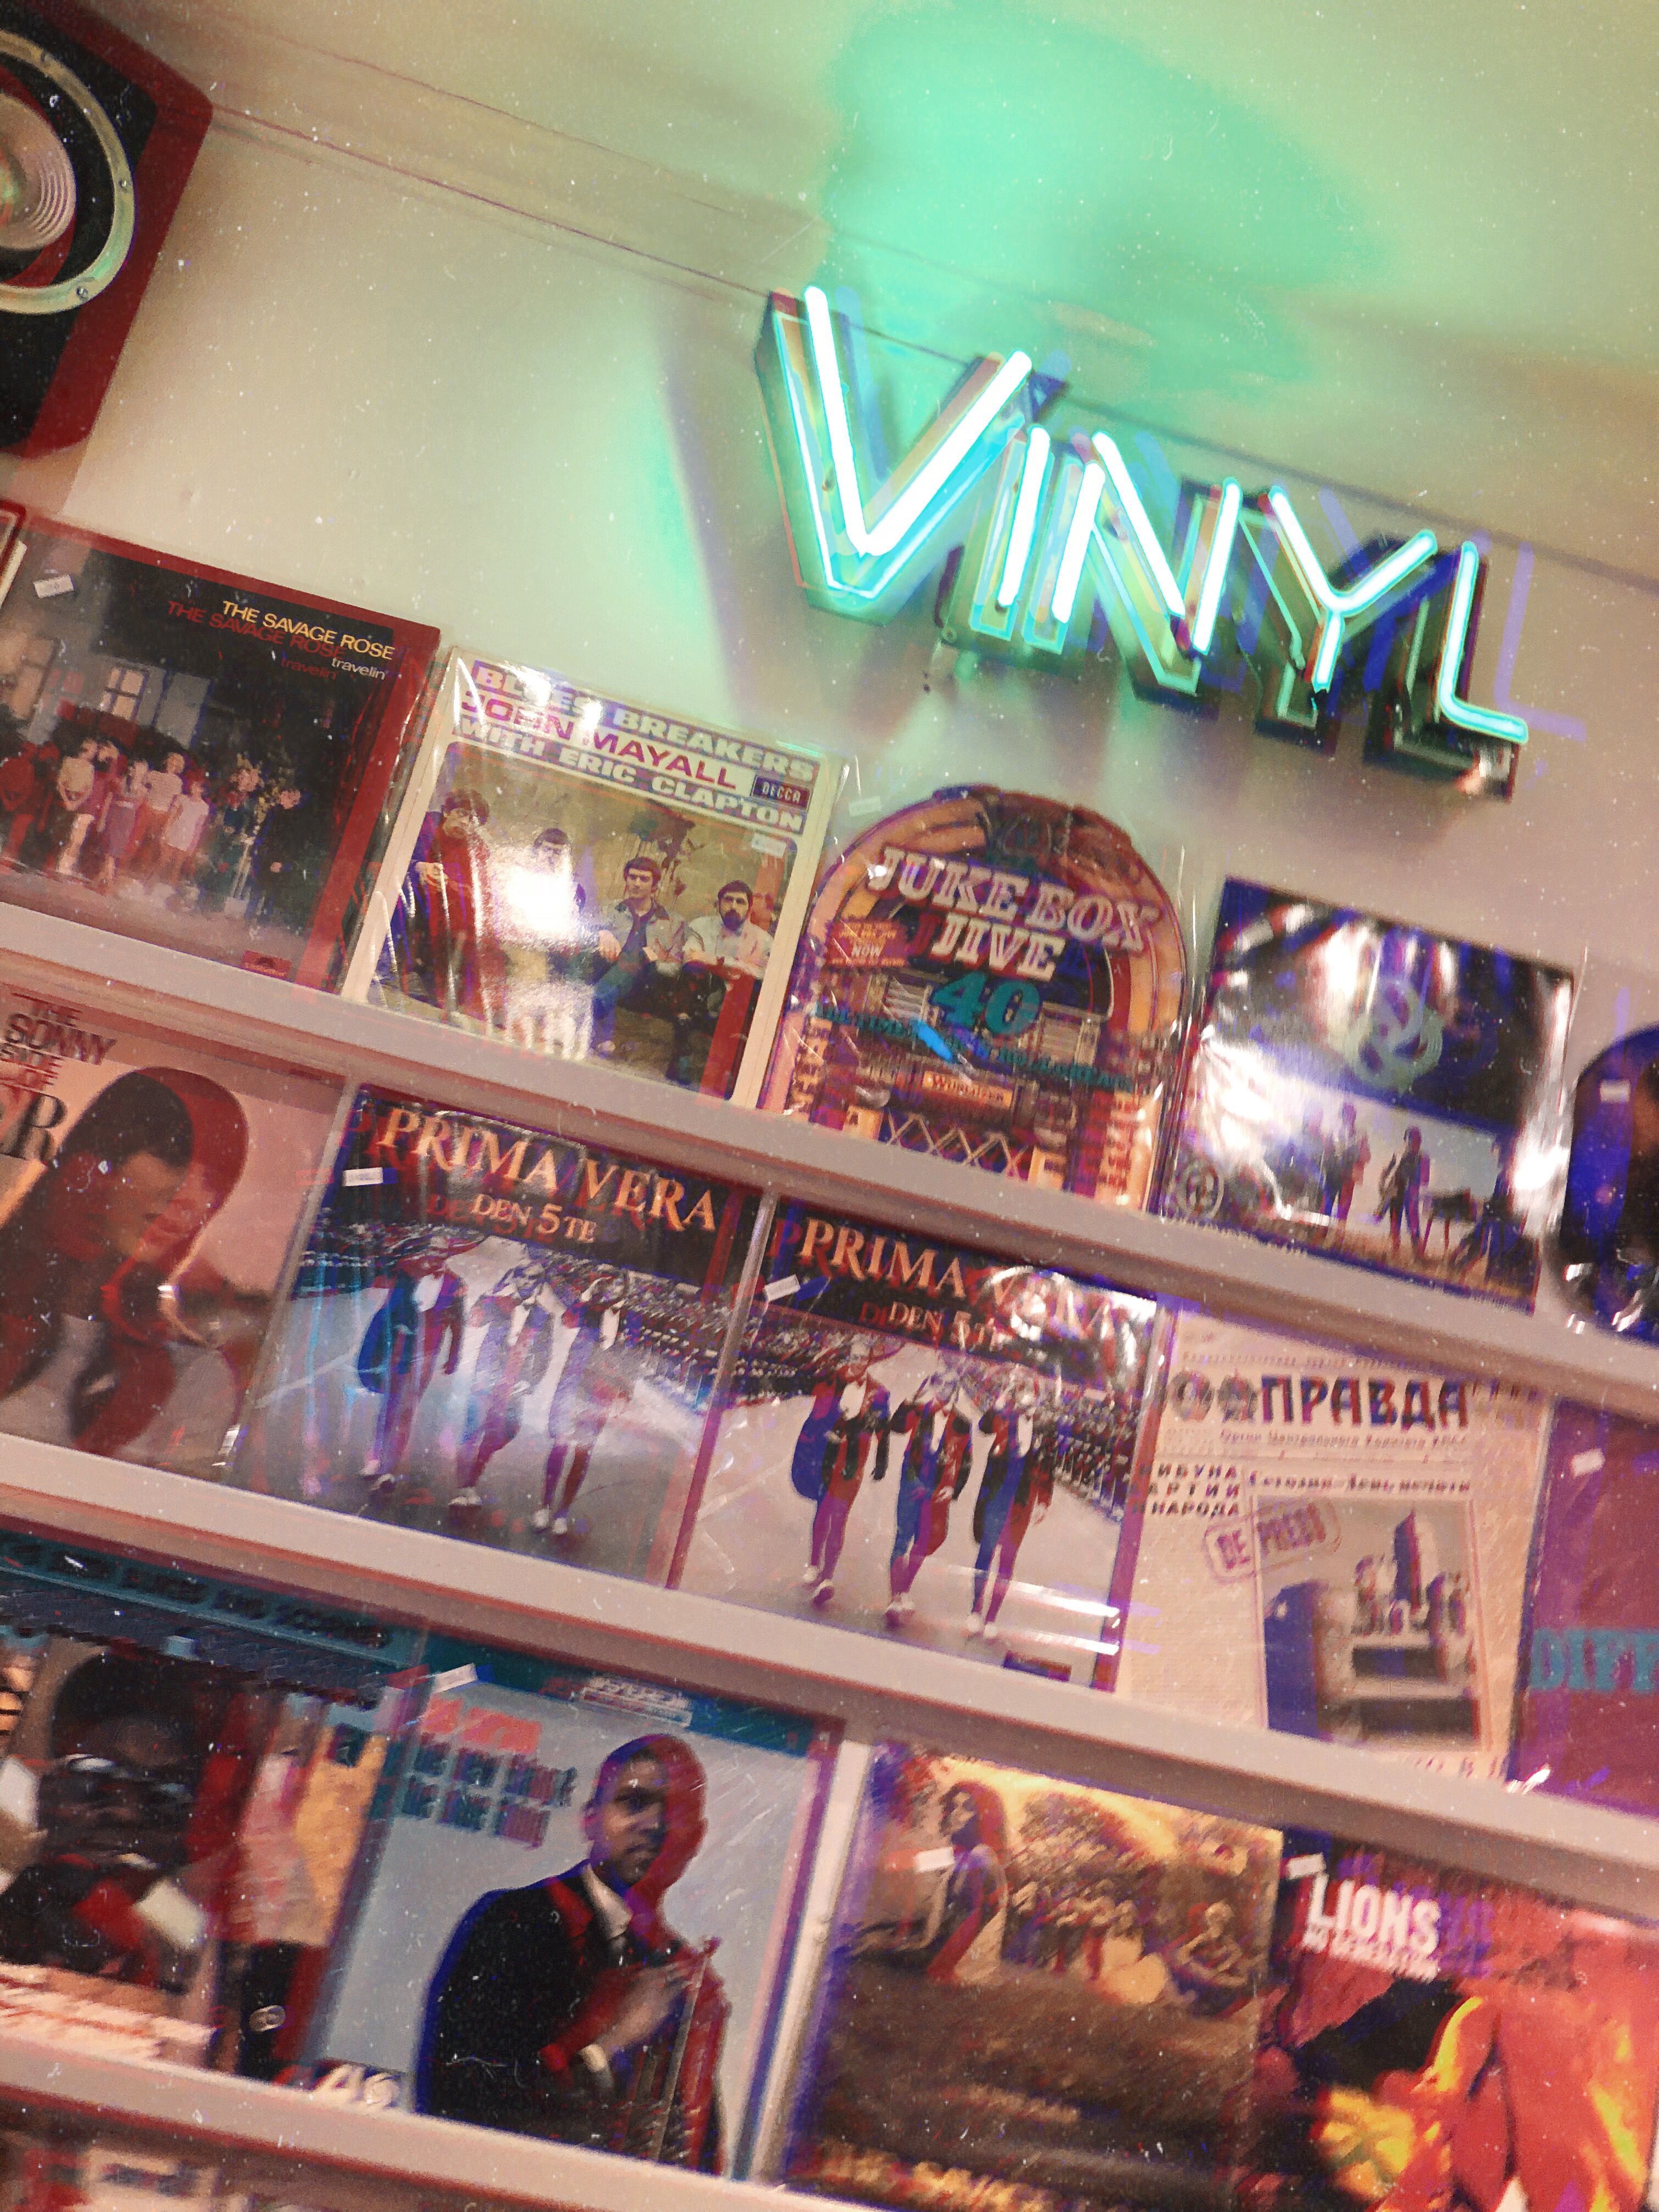 Vinyl, Music, old school, inspo. Music aesthetic, Aesthetic vintage